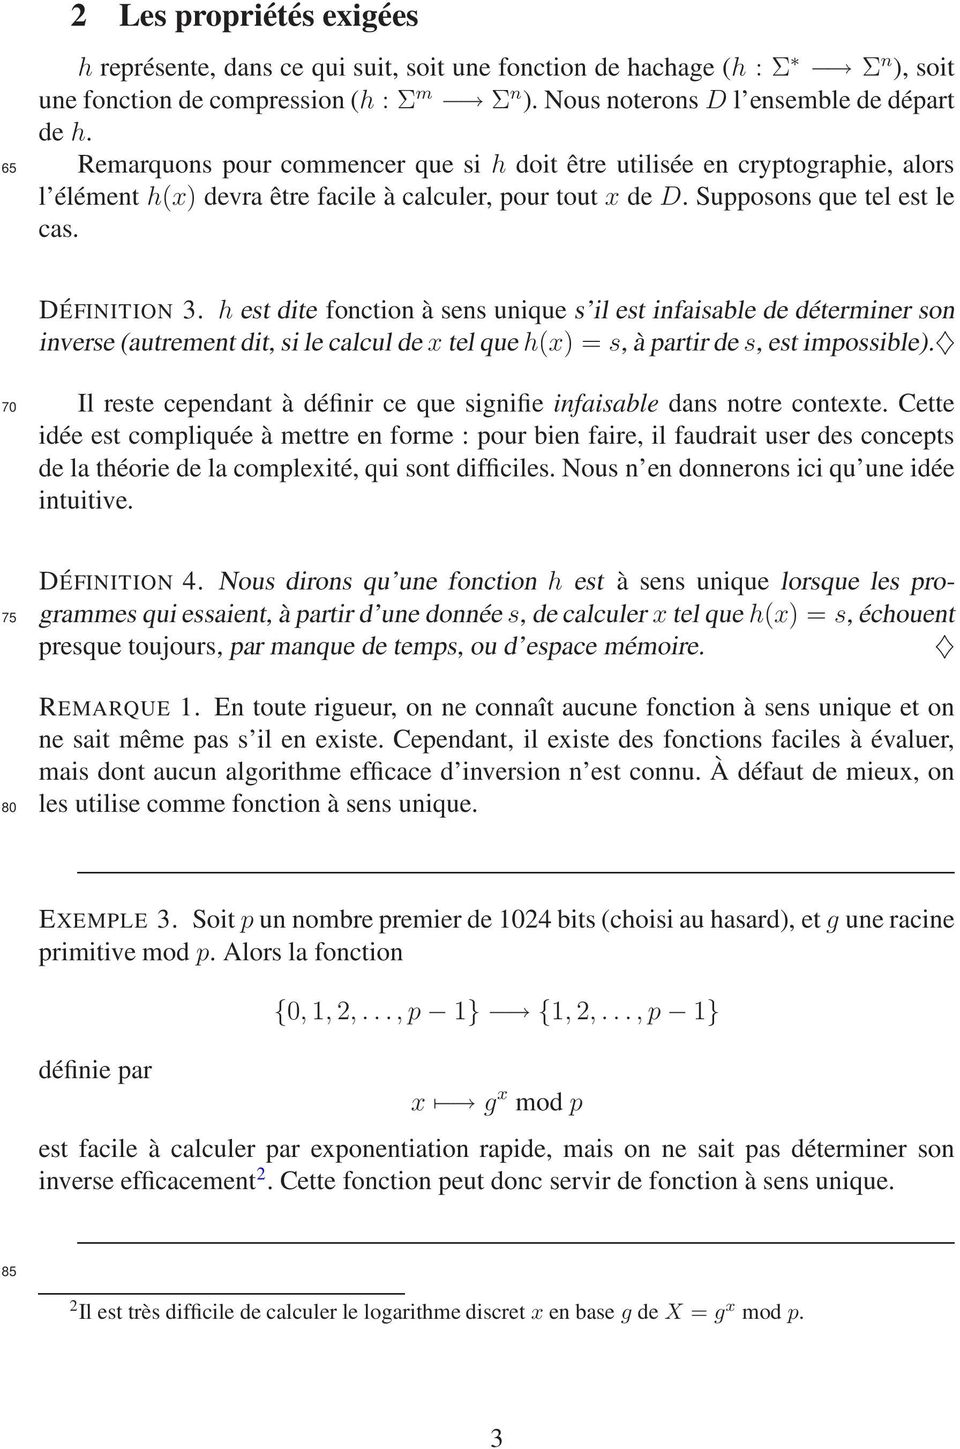 h est dite fonction à sens unique s il est infaisable de déterminer son inverse (autrement dit, si le calcul de x tel que h(x) = s, à partir de s, est impossible).